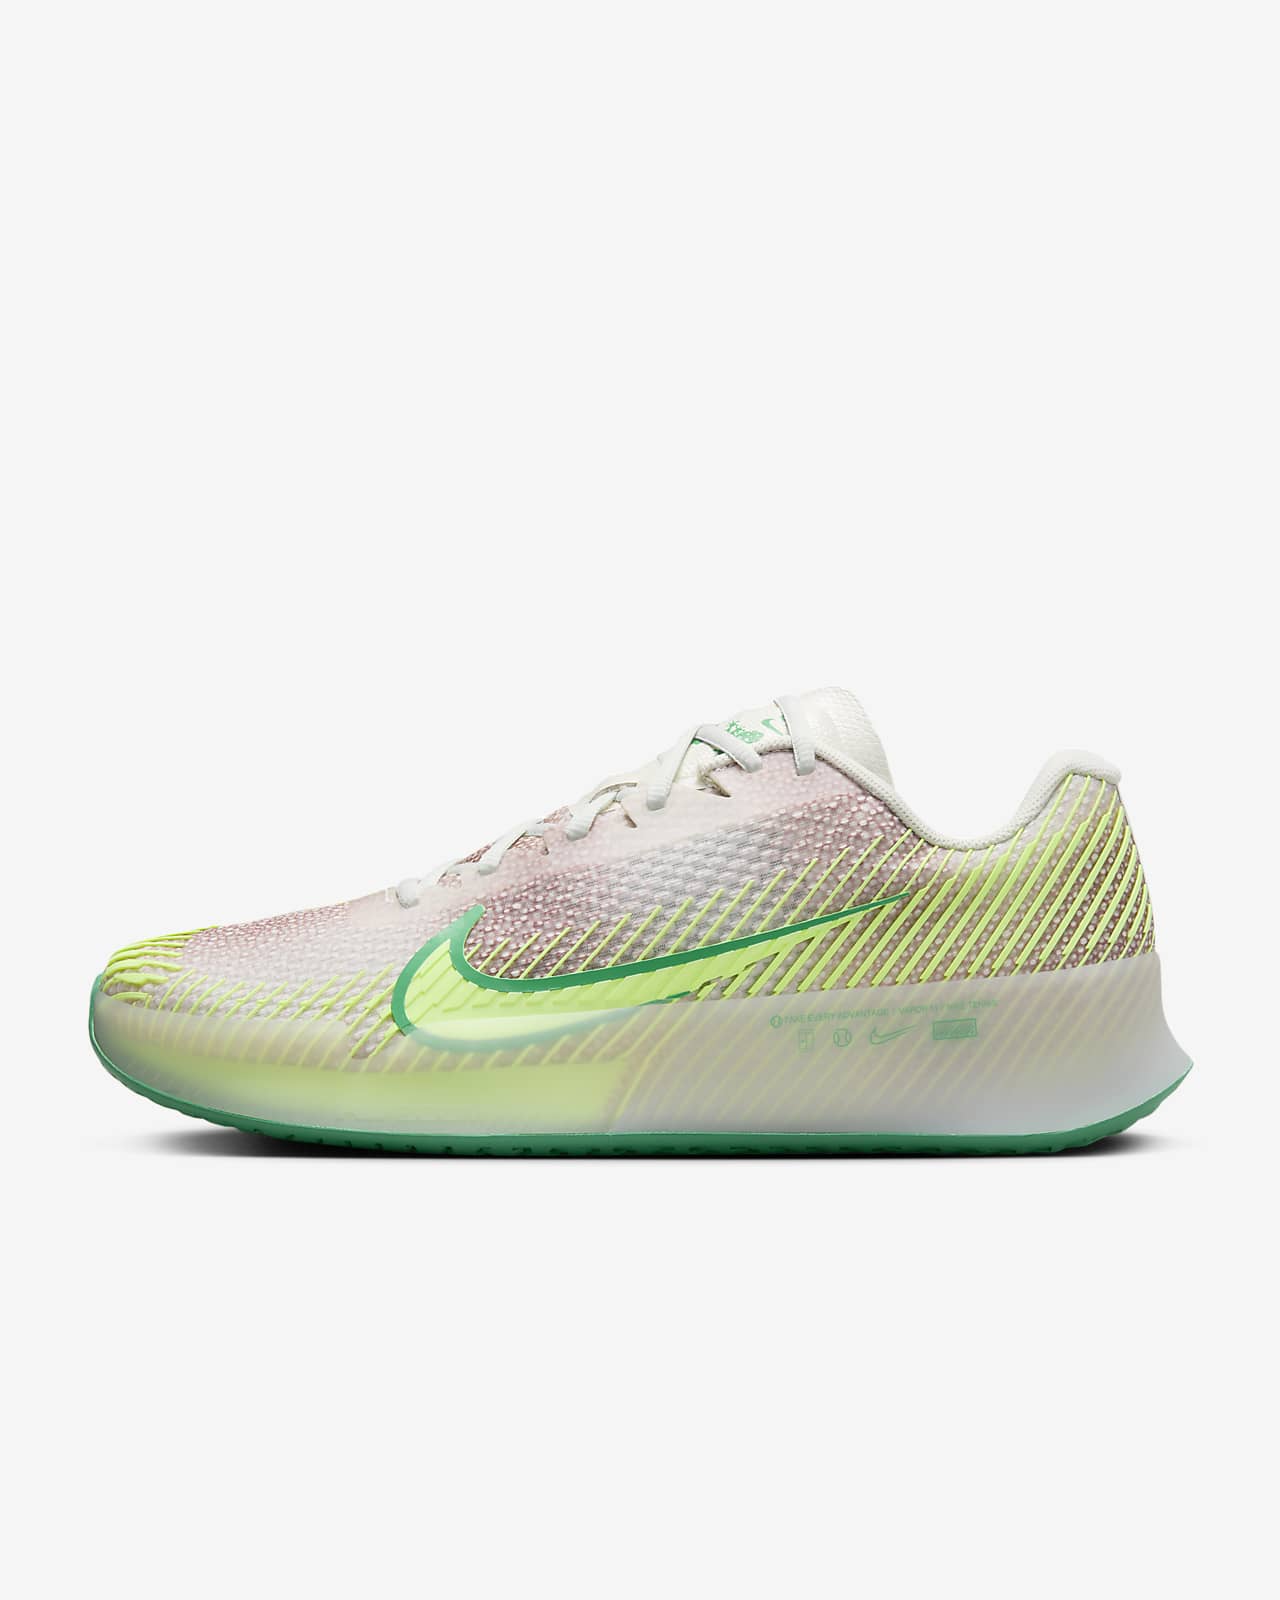 NikeCourt Air Zoom Vapor 11 Premium Men's Hard Court Tennis Shoes